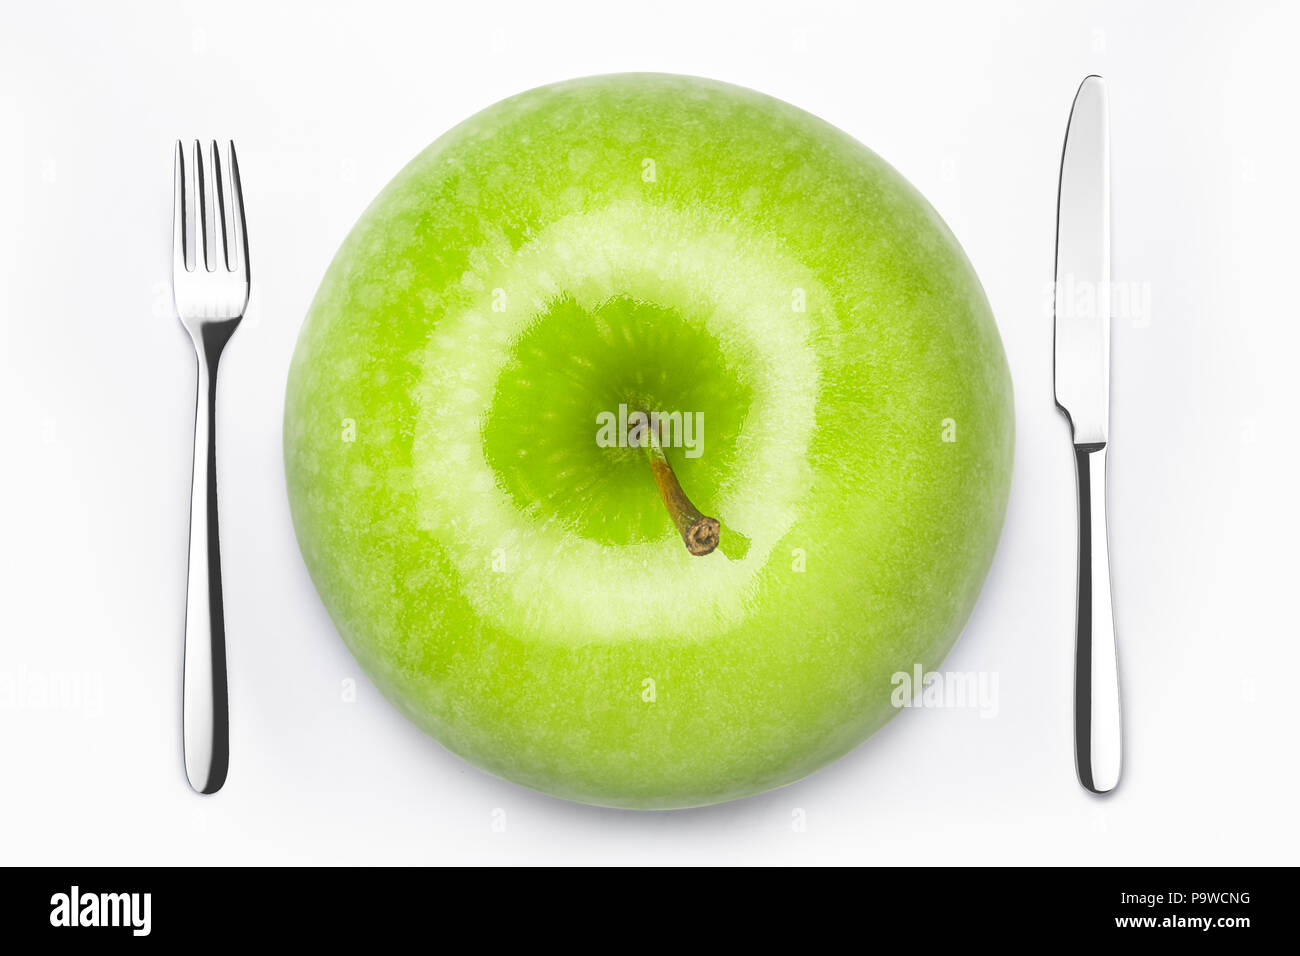 Diät Konzept, grüner Apfel auf einem weissen Teller, Gabel, Messer, Gewicht Stockfoto